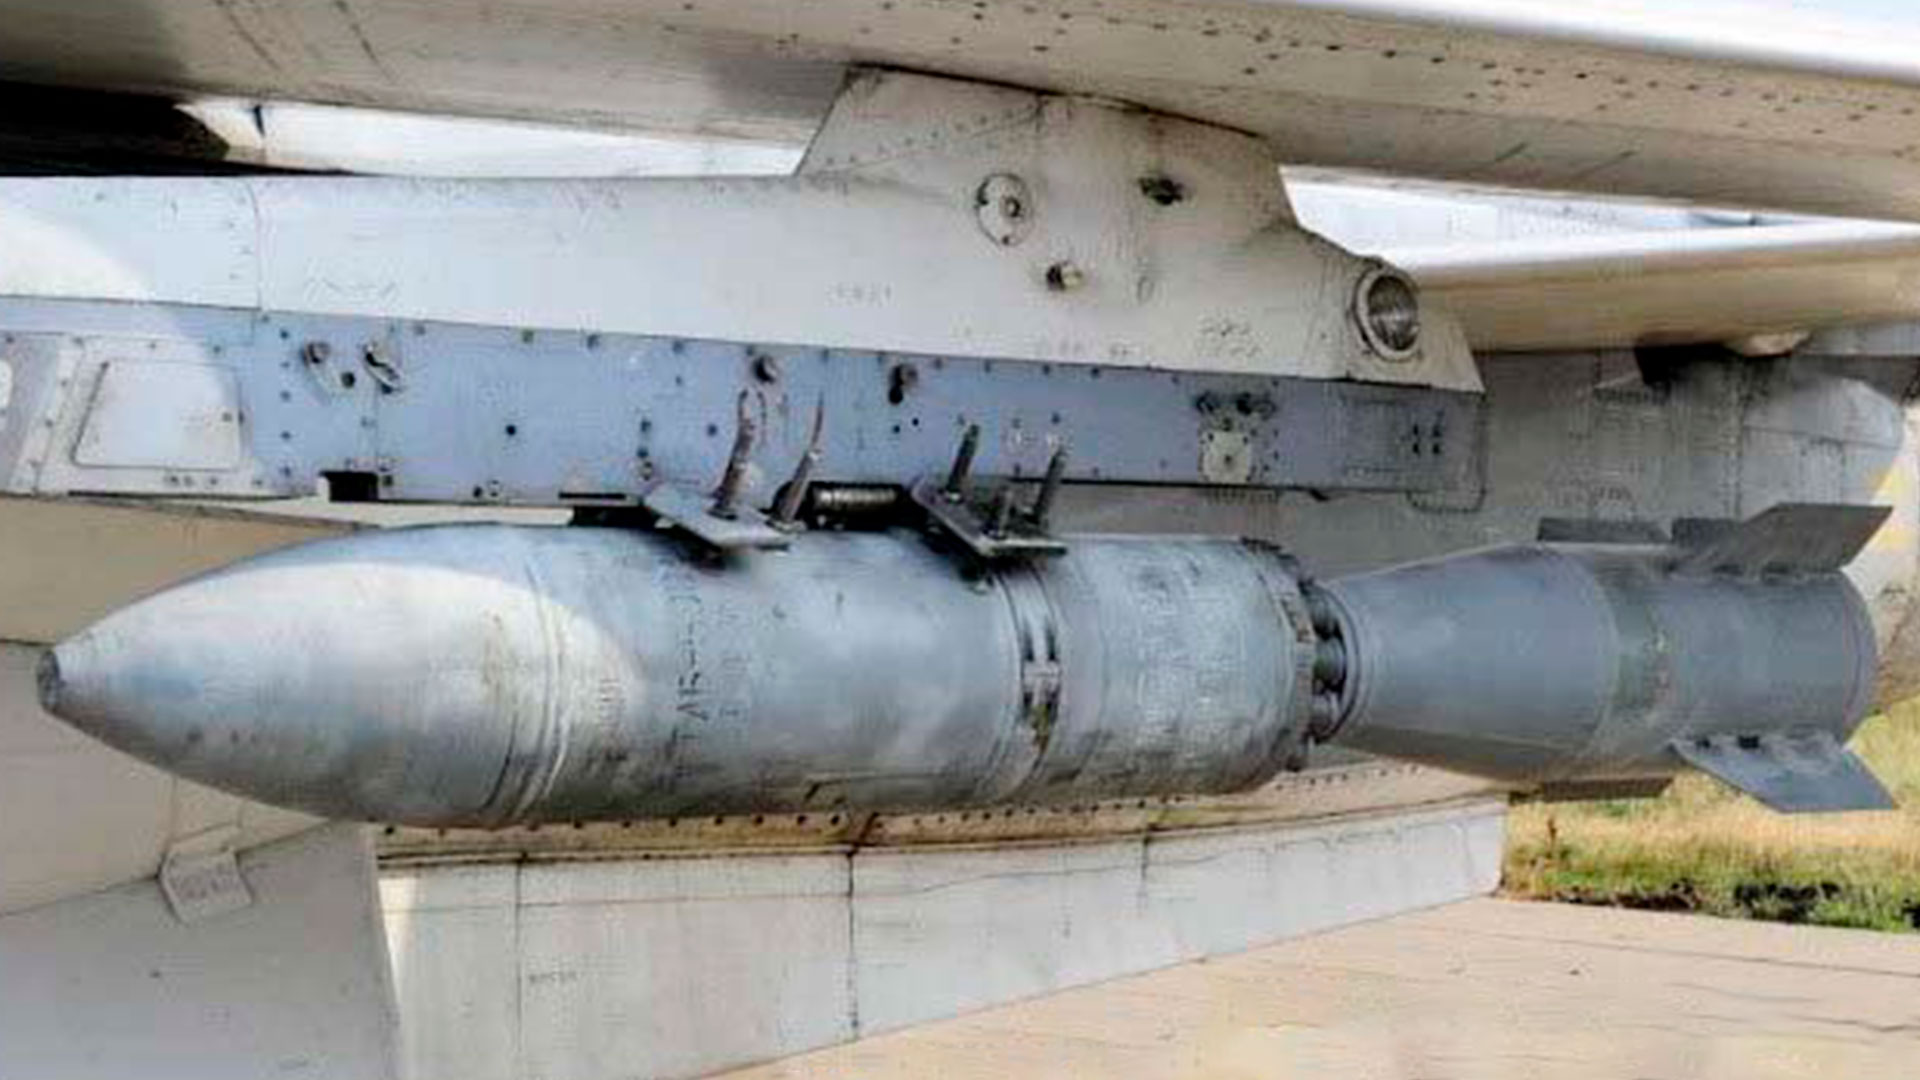 La bomba "BETAB-500 ShP" (@raging545)